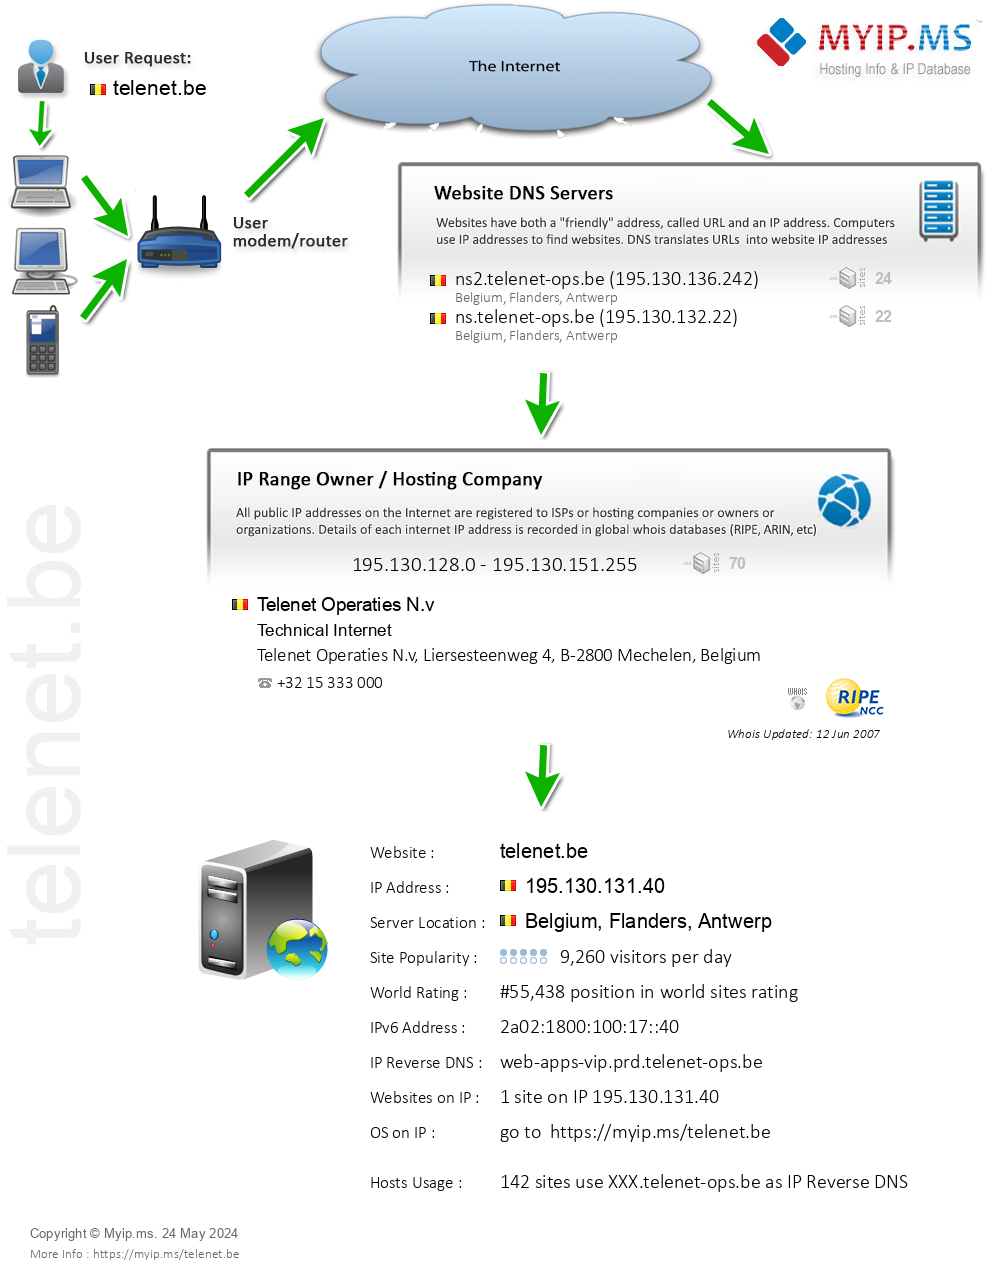 Telenet.be - Website Hosting Visual IP Diagram